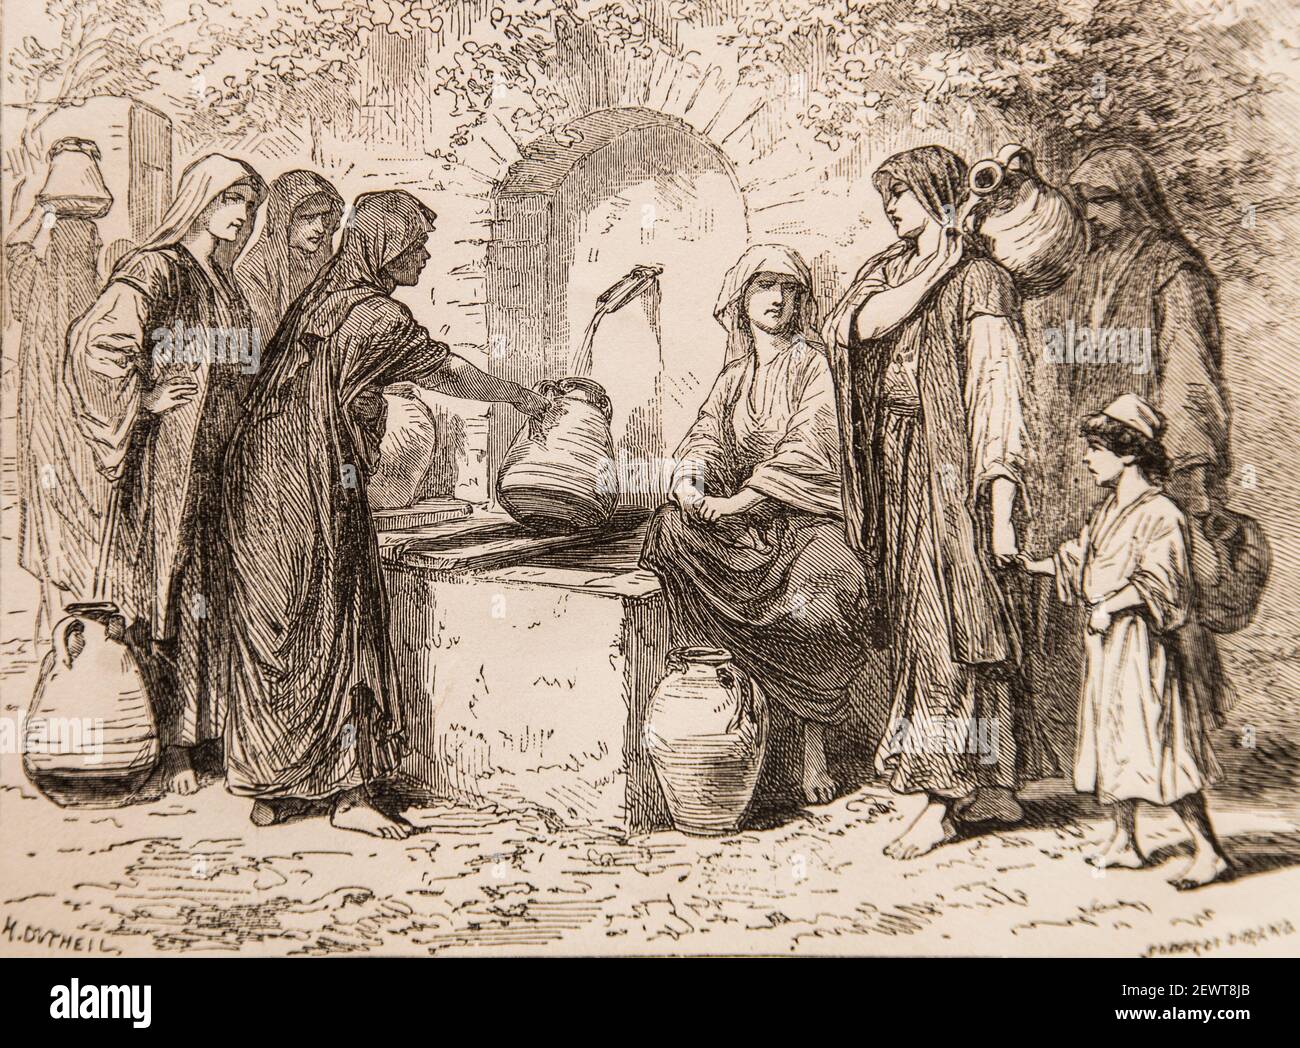 vie de jesus par ernest renan ,dessins de godefroy durand,editeur michel  levy 1870 Stock Photo - Alamy